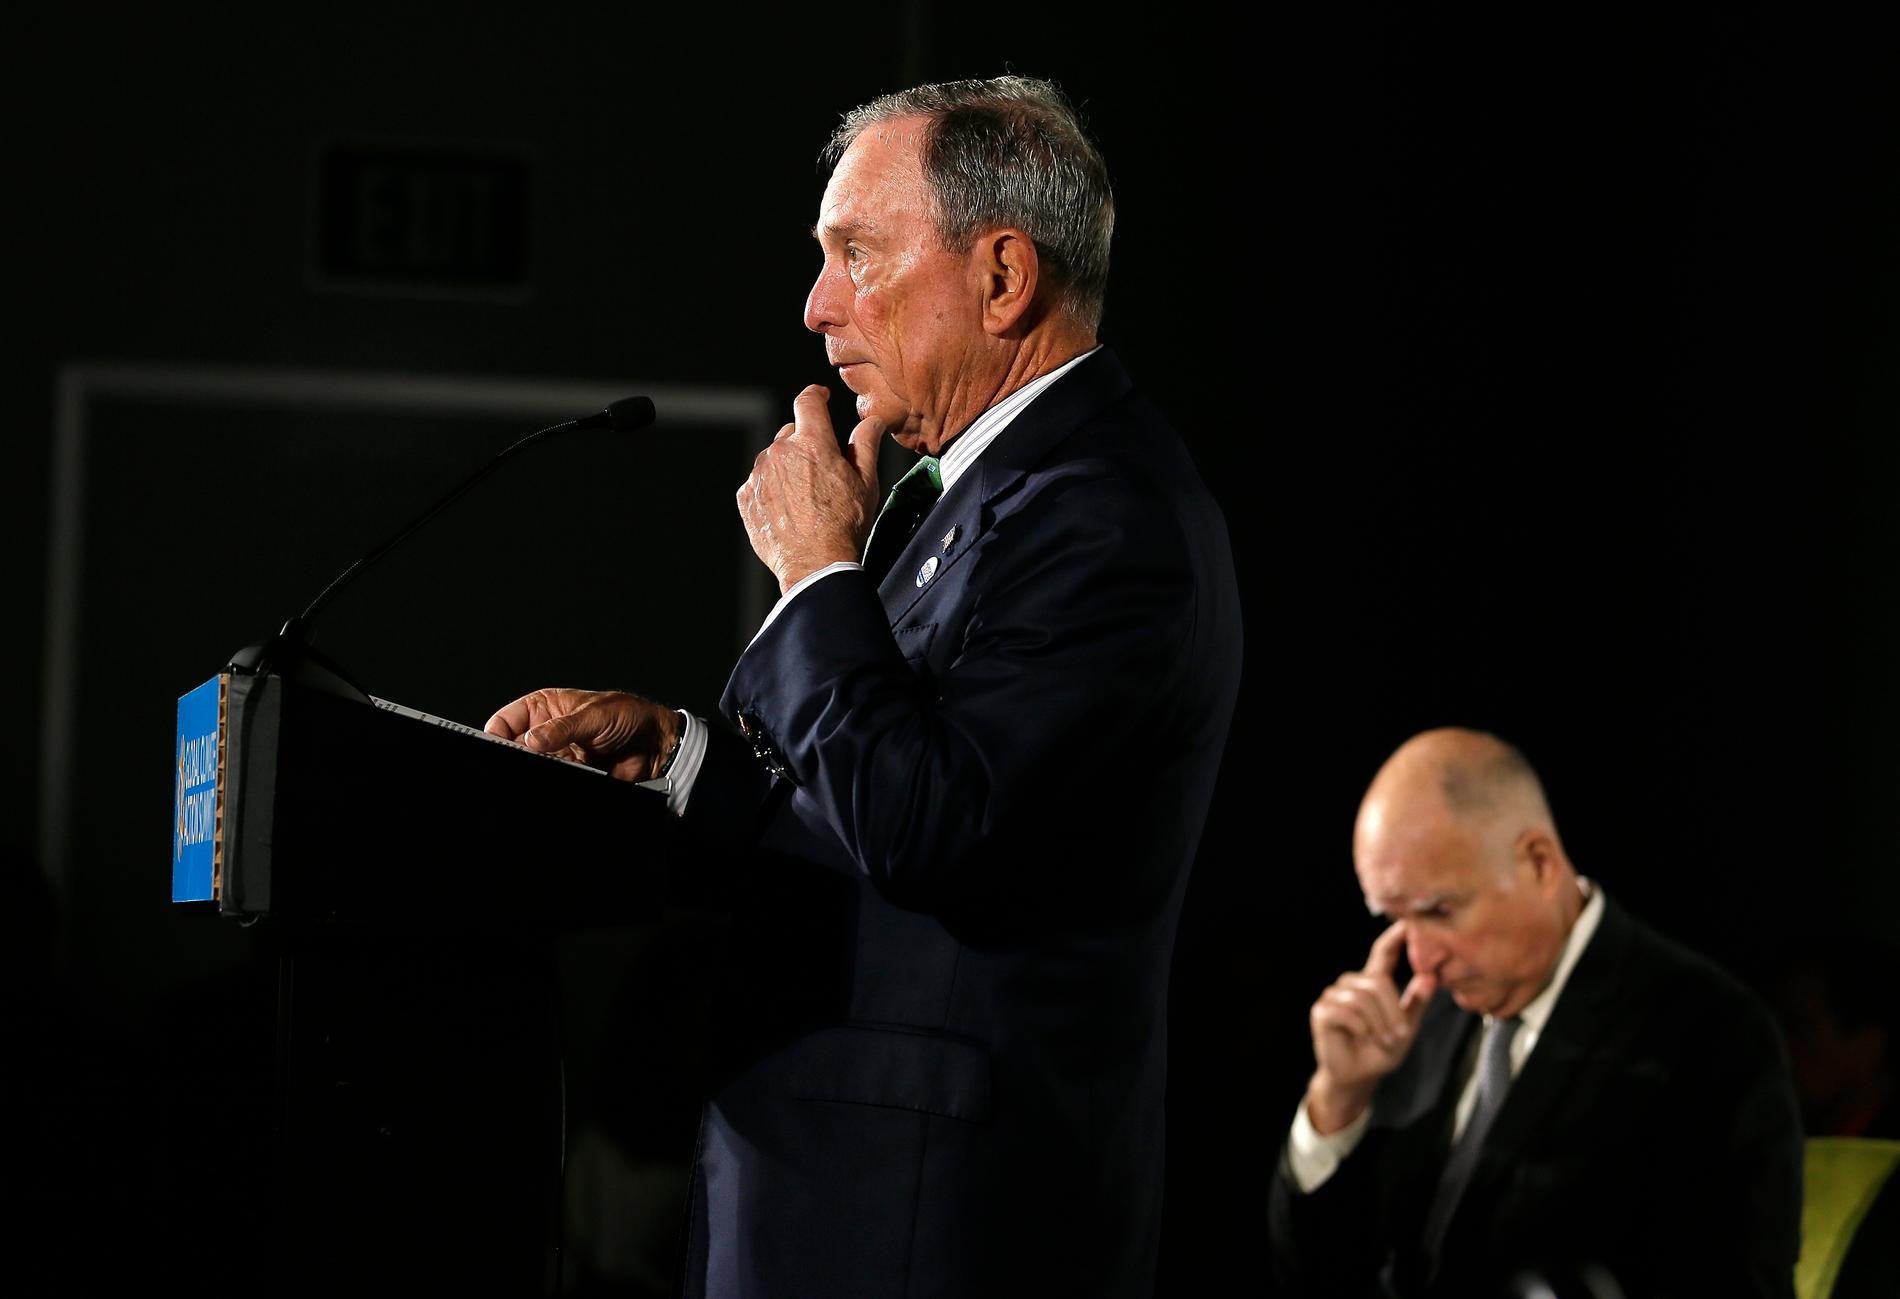 Staden New Yorks tidigare borgmästare, den förmögne affärsmannen och nyblivne demokraten Michael Bloomberg talar om en av sina käpphästar klimatet. Bakom honom lyssnar Kaliforniens avgående guvernör Jerry Brown.